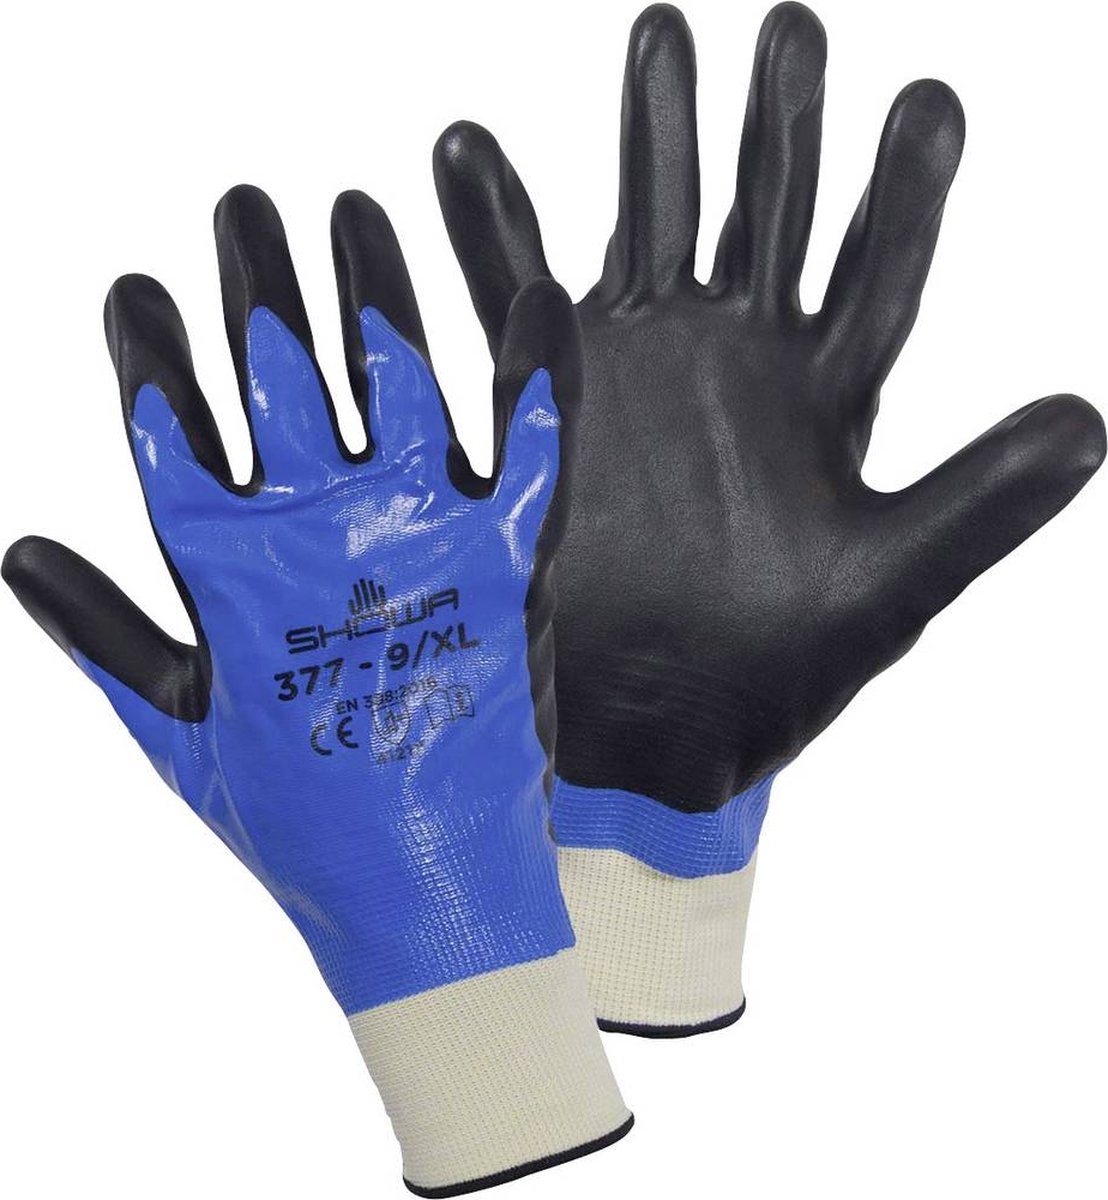 Showa High Tech 377 Werkhandschoenen Blauw/zwart - Maat XL - Nitril  Handschoenen | bol.com